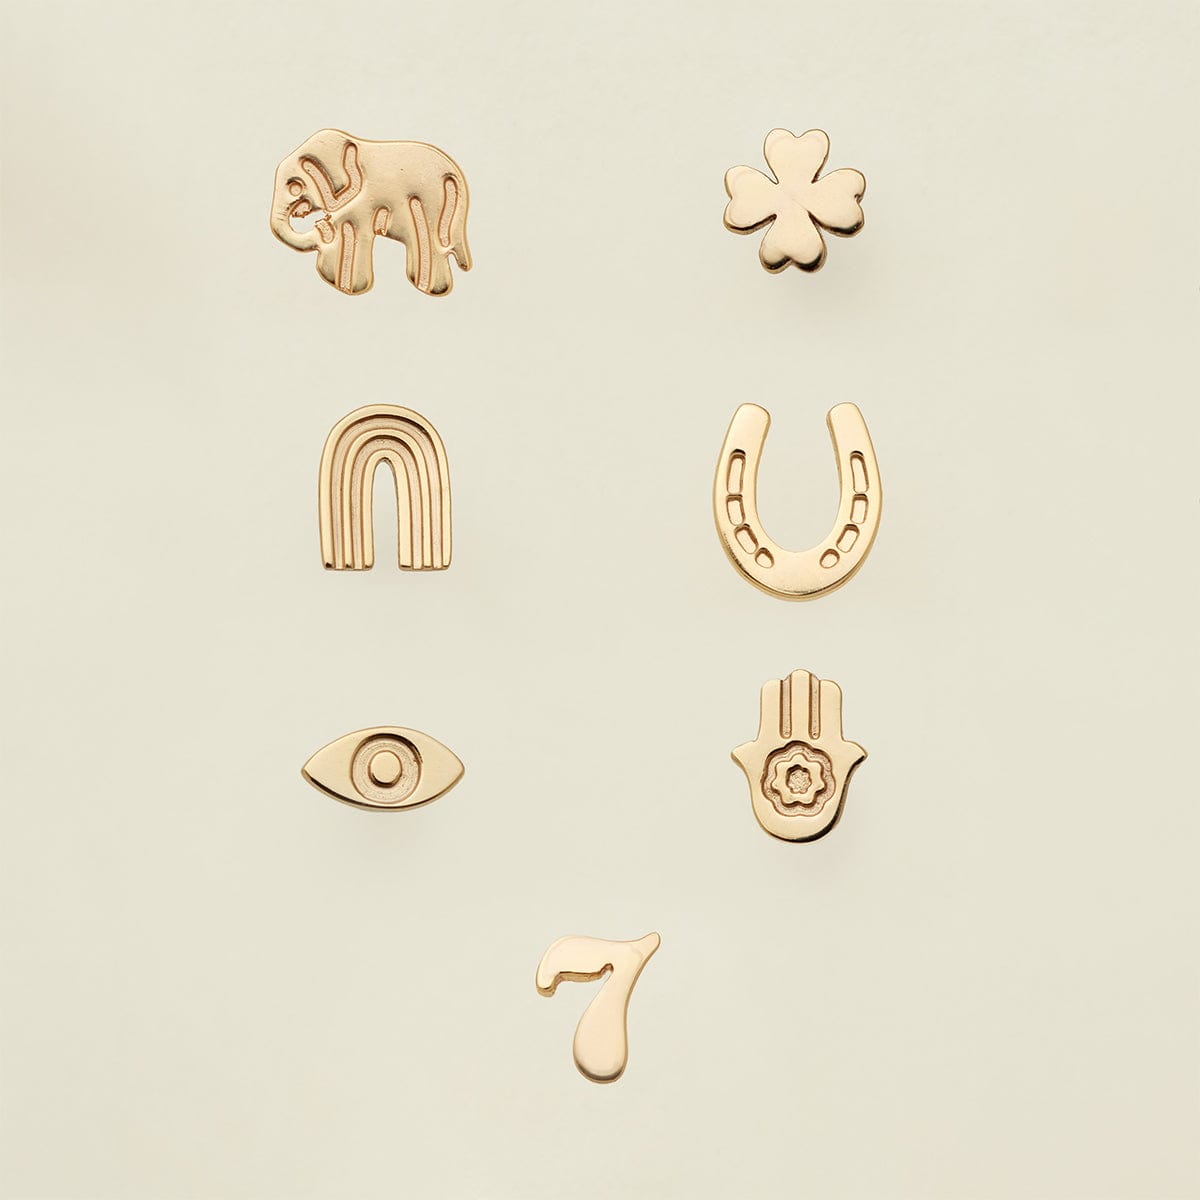 Lucky Stud Earring - Gold Earring